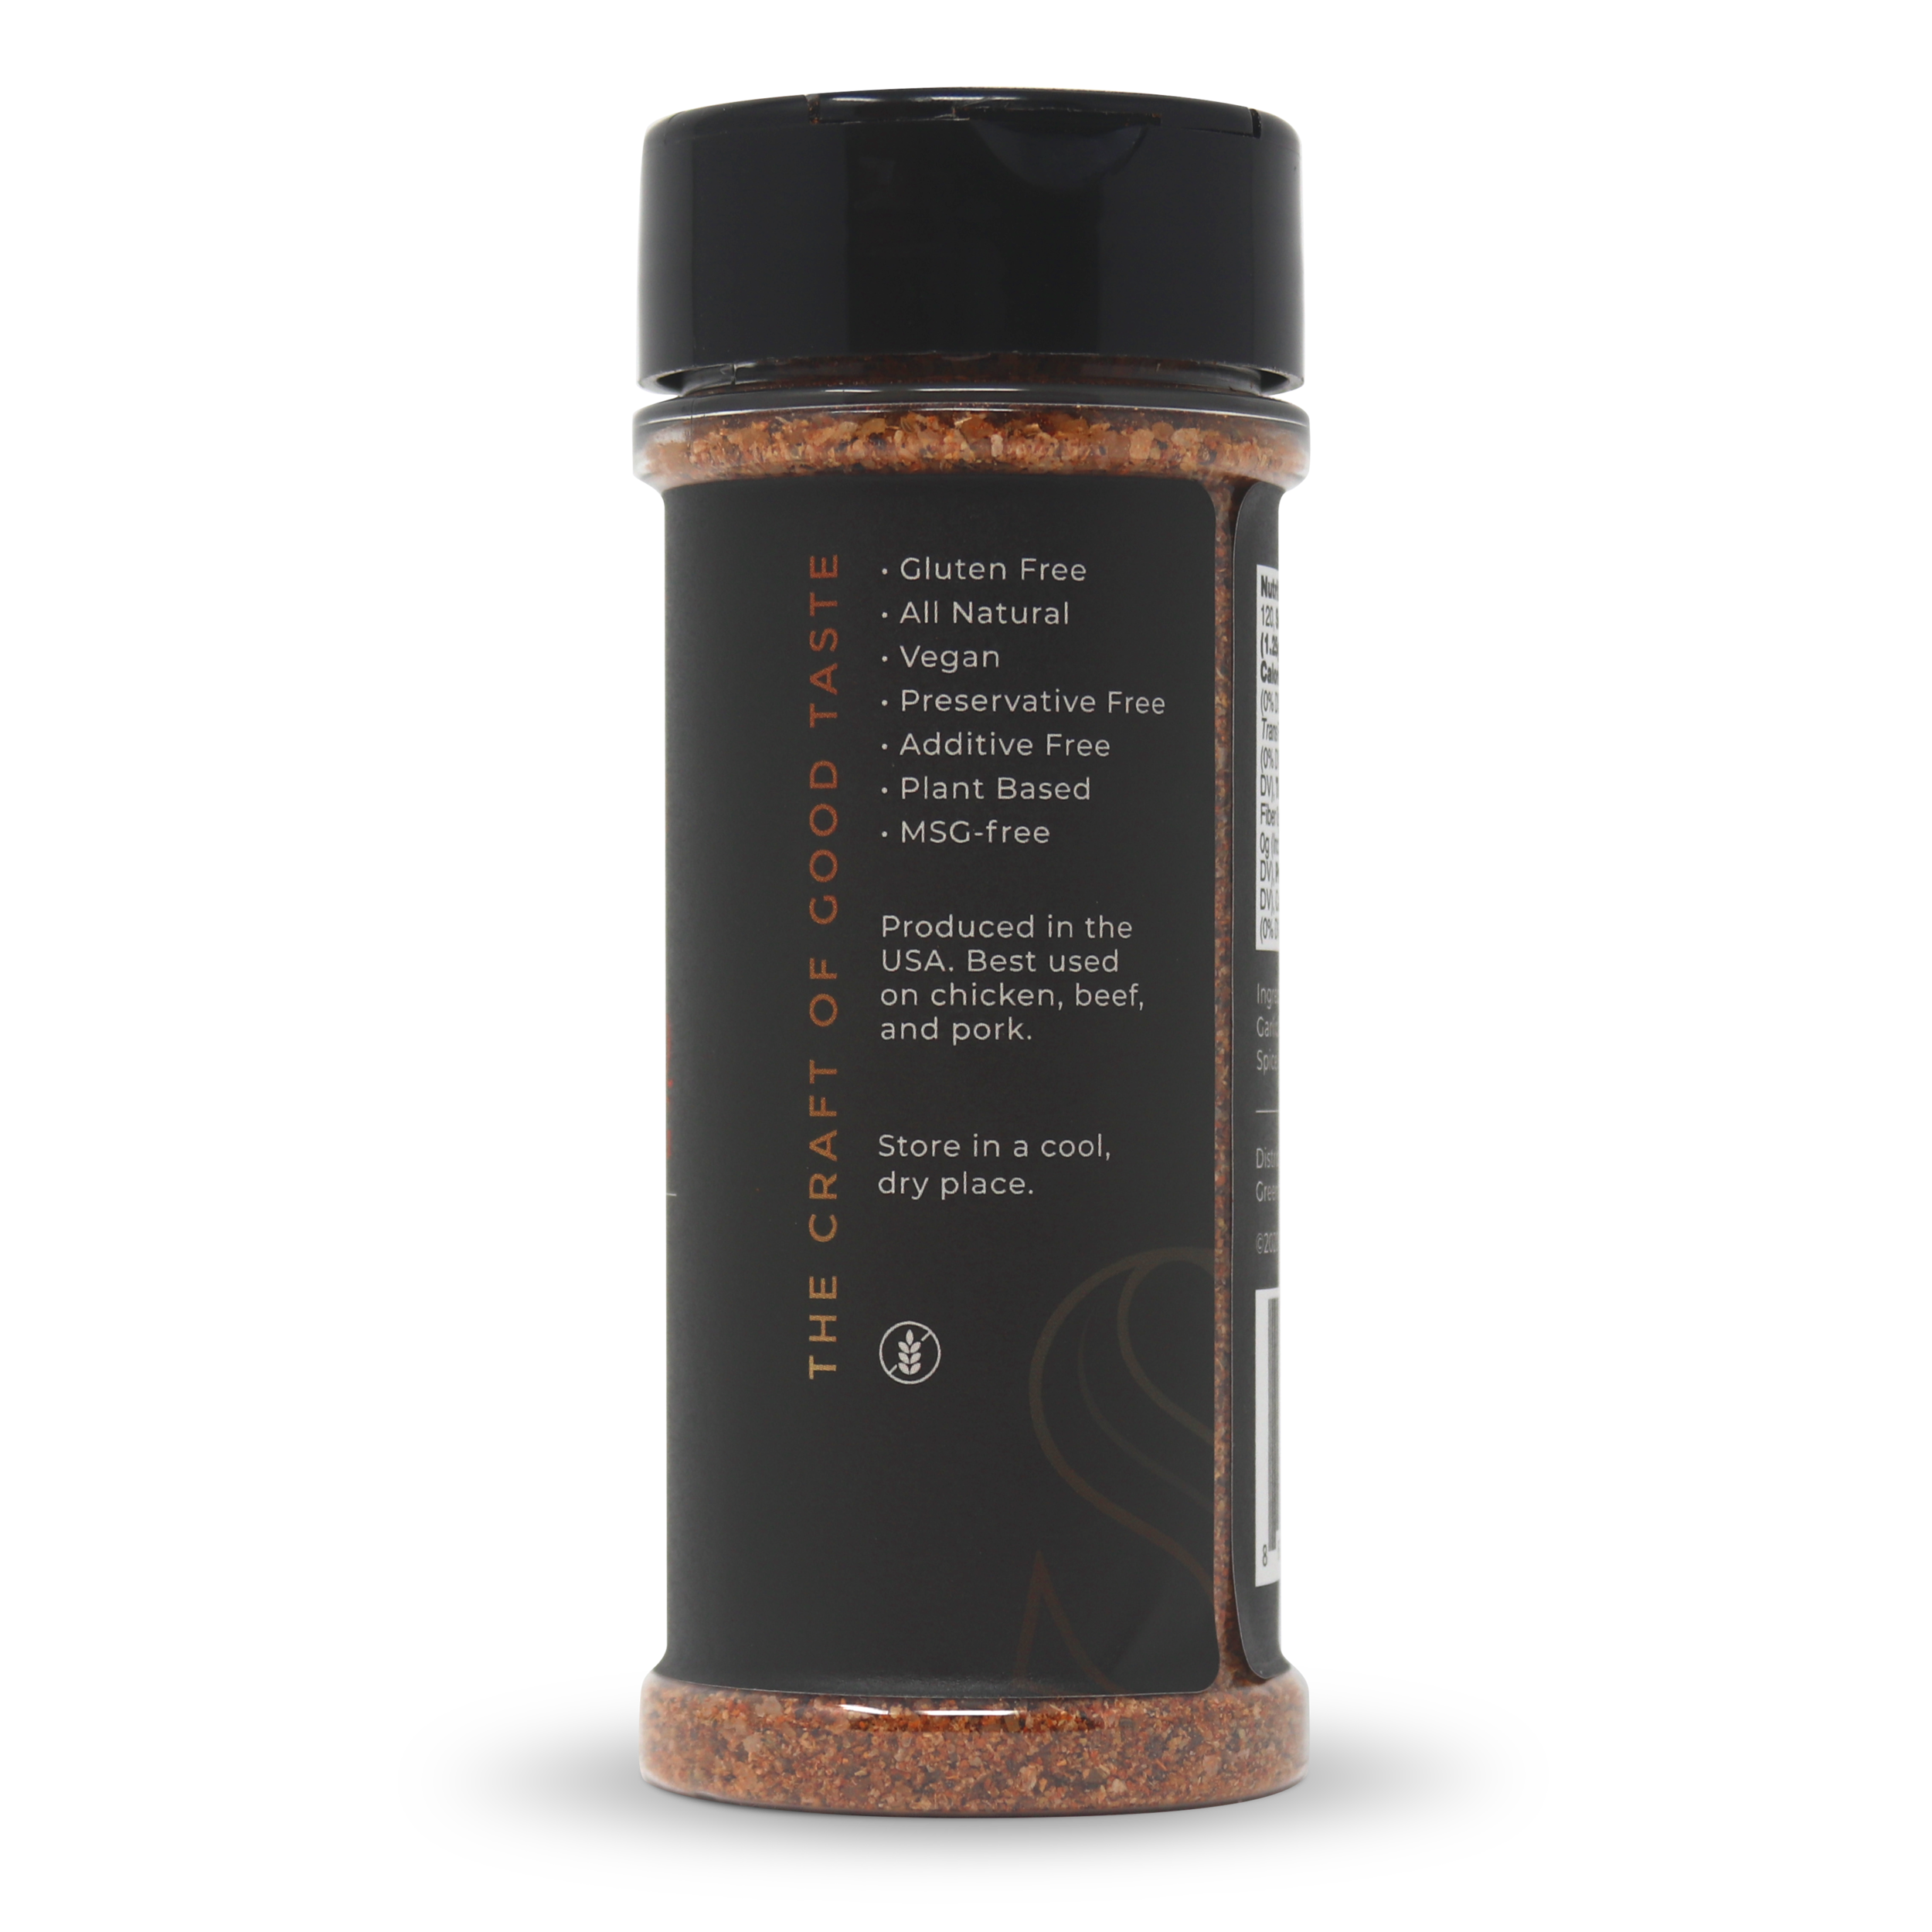 Babineaux Seasoning – 6 spice jars ($4.00 each)